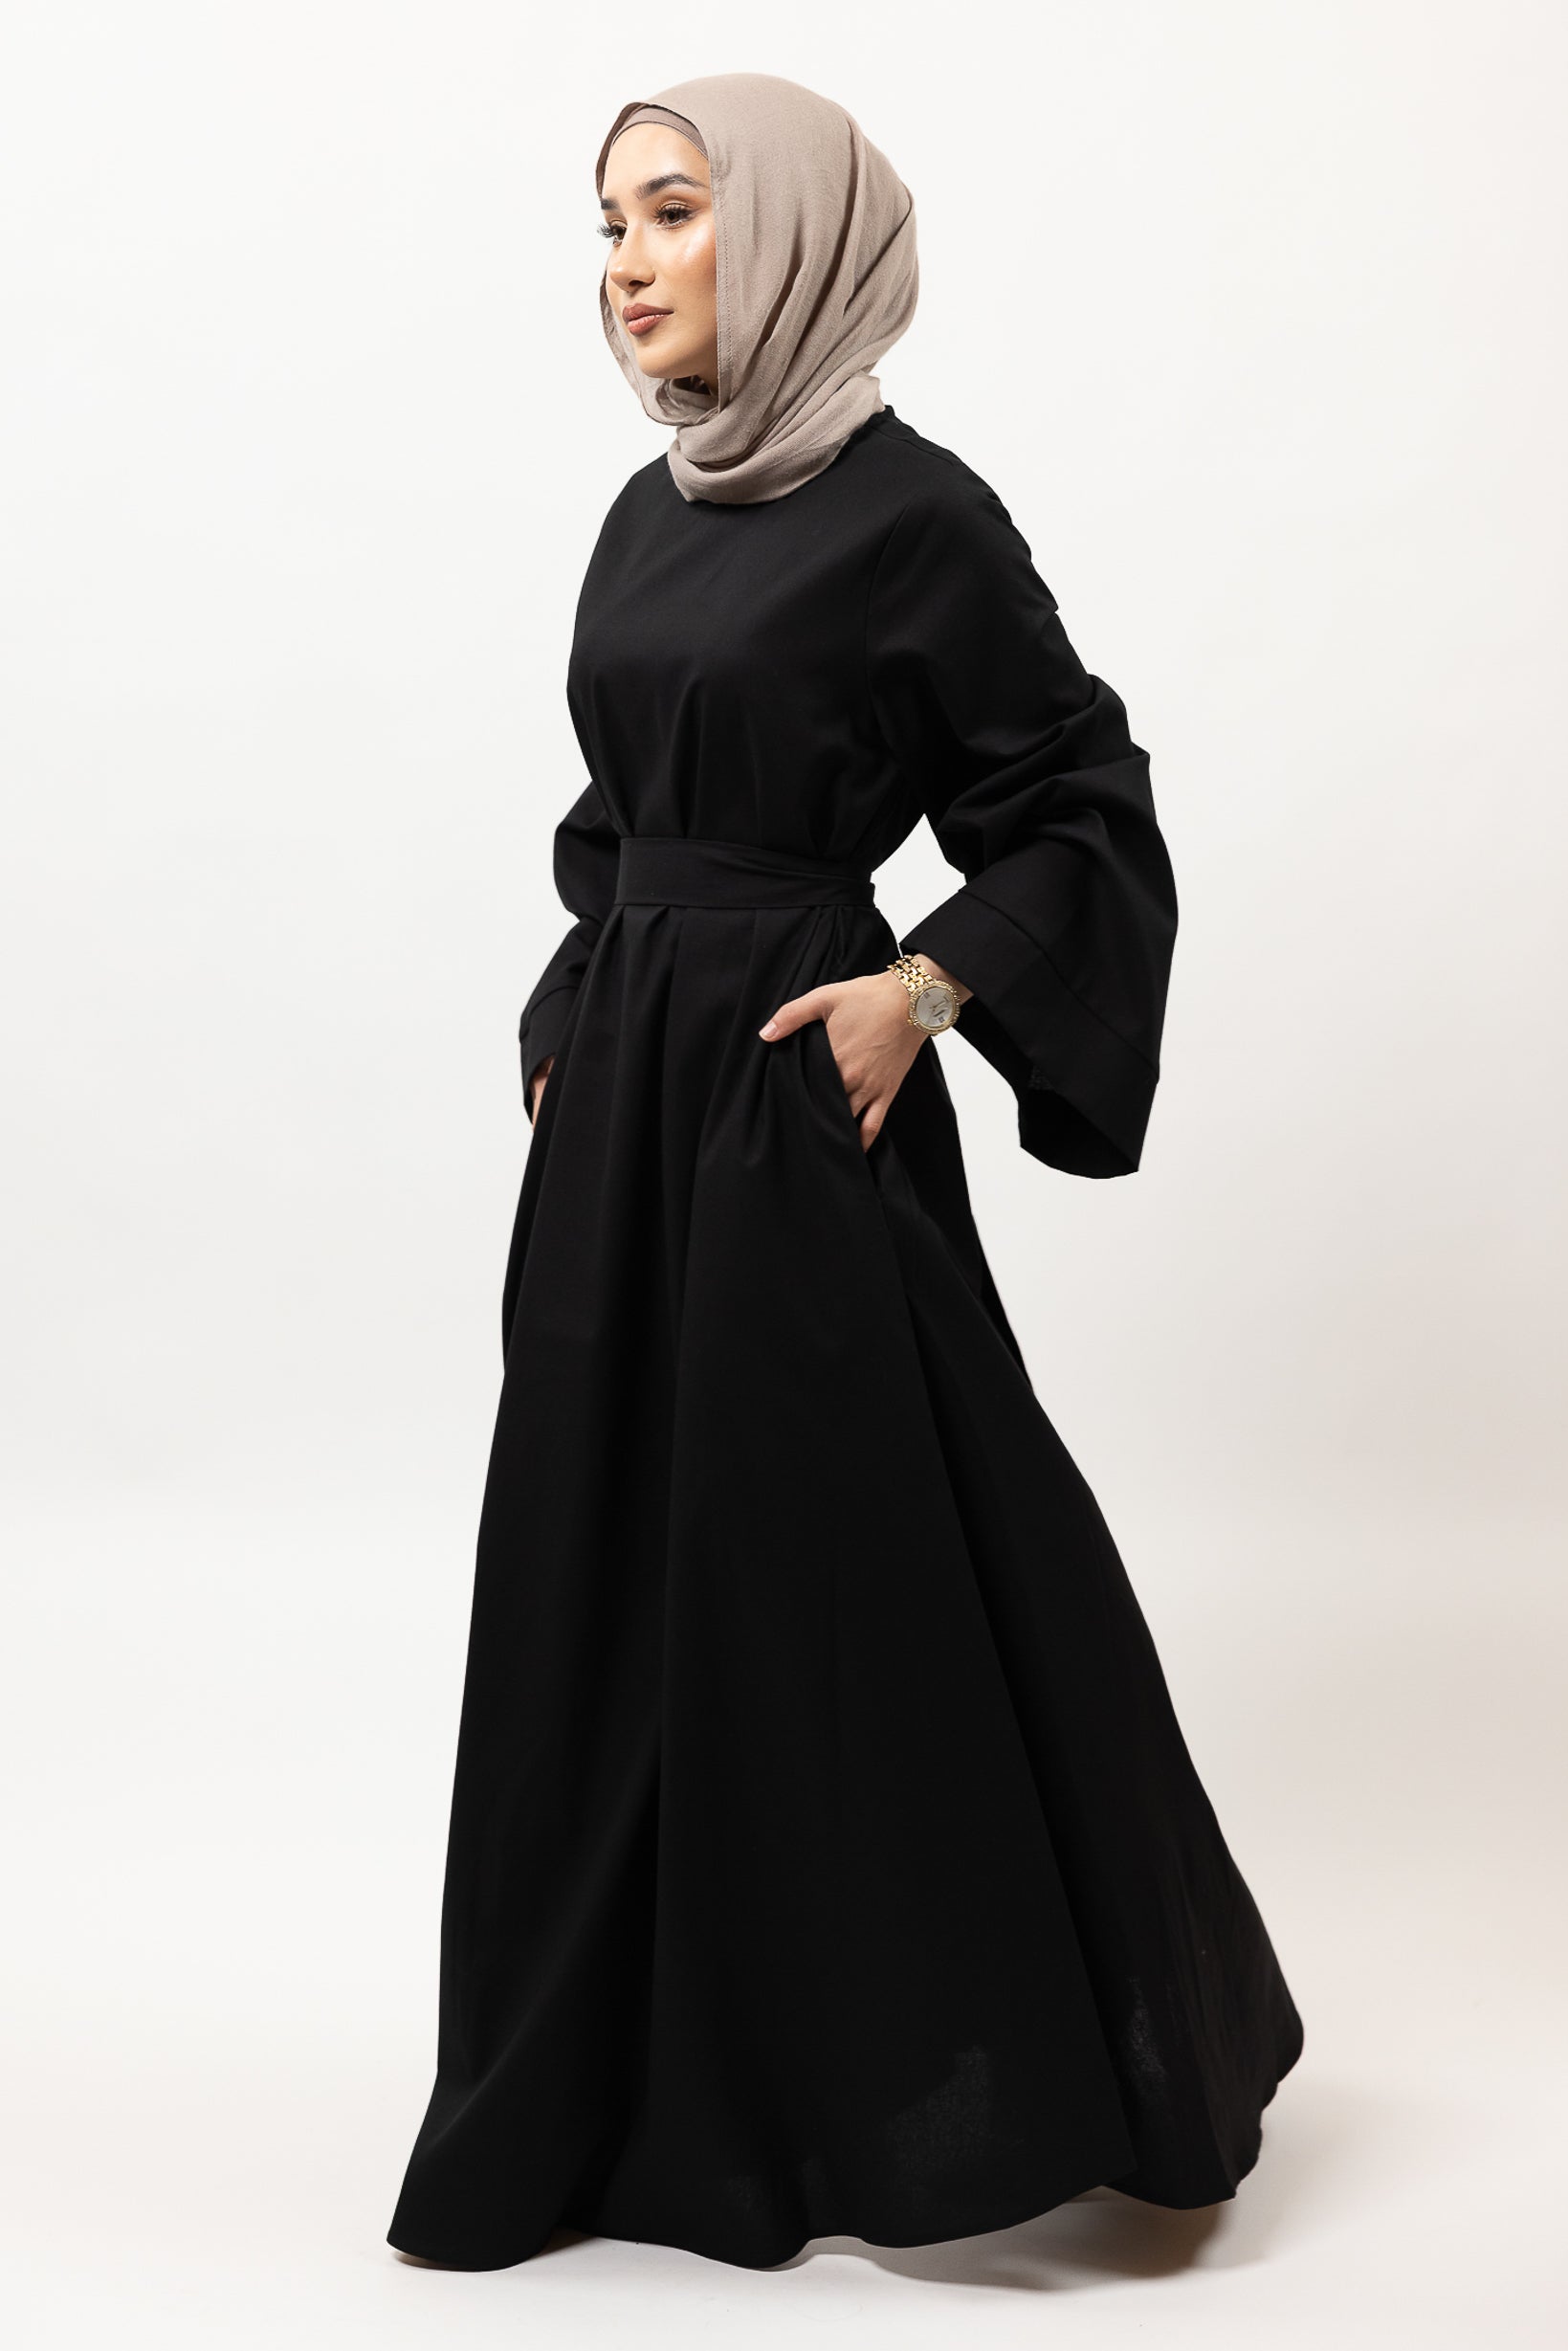 M8390Black-dress-abaya